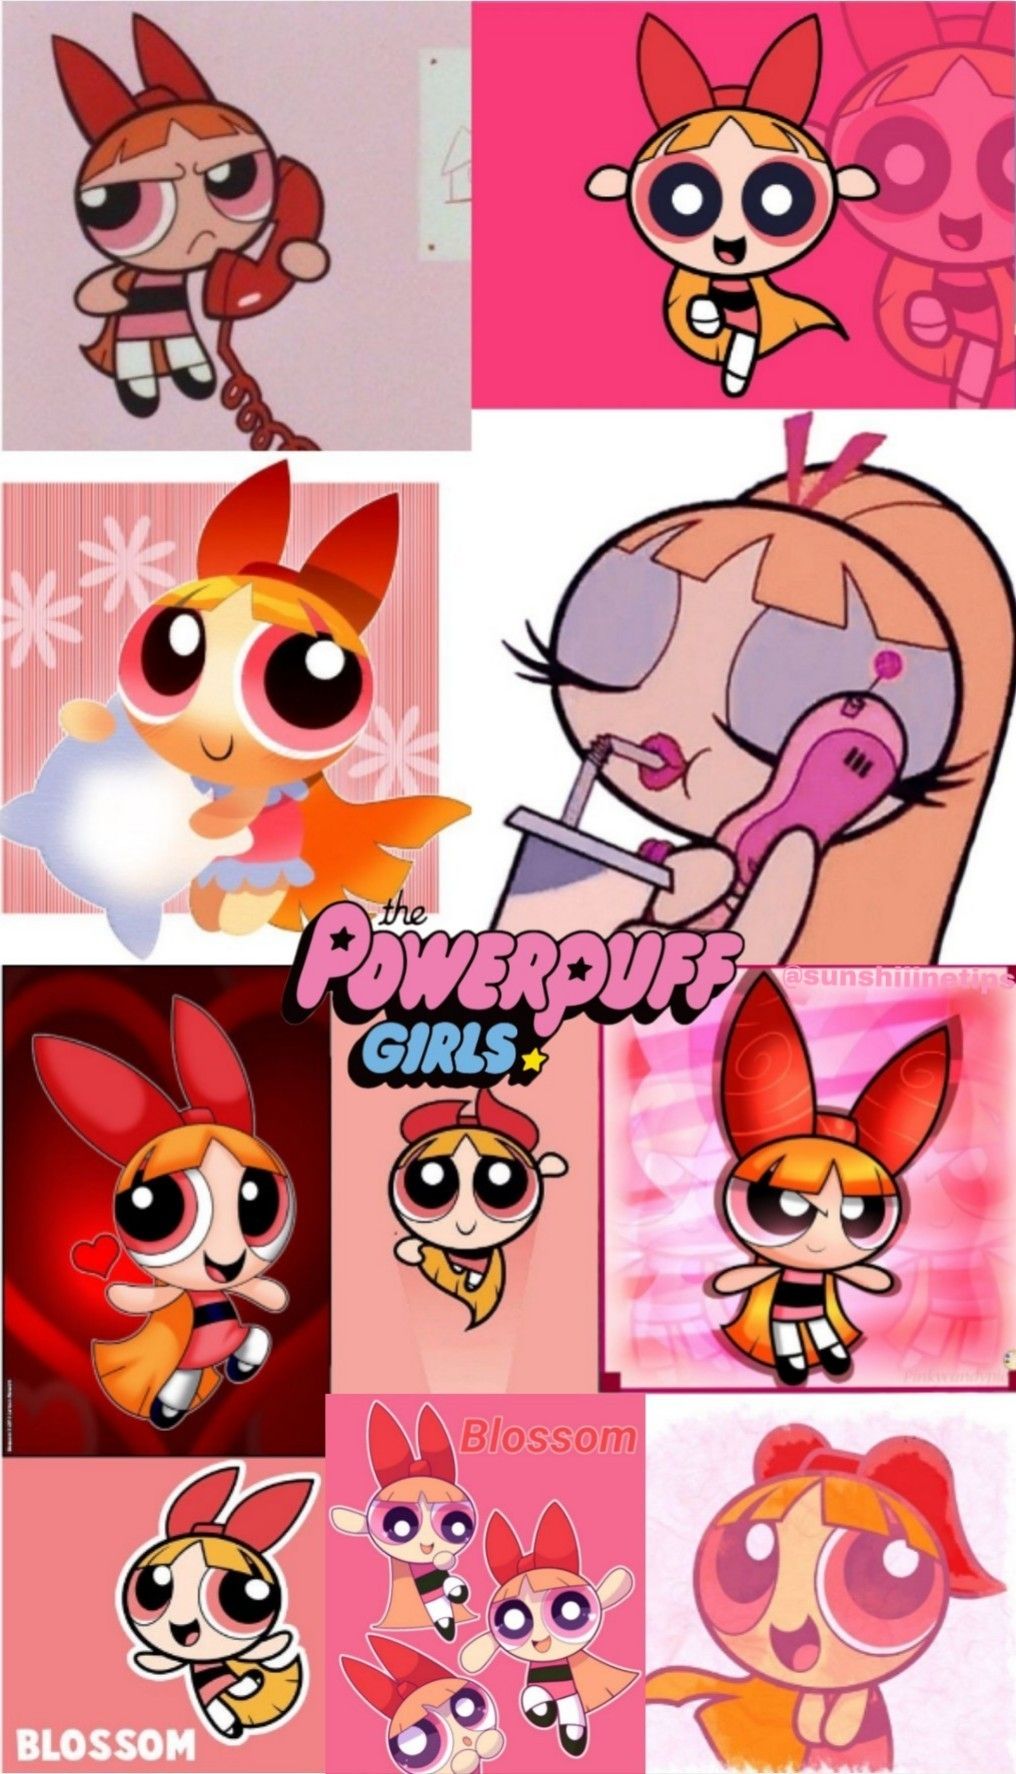 Powerpuff girls red wallpaper. Cartoon wallpaper iphone, Bad girl wallpaper, Powerpuff girls wallpaper